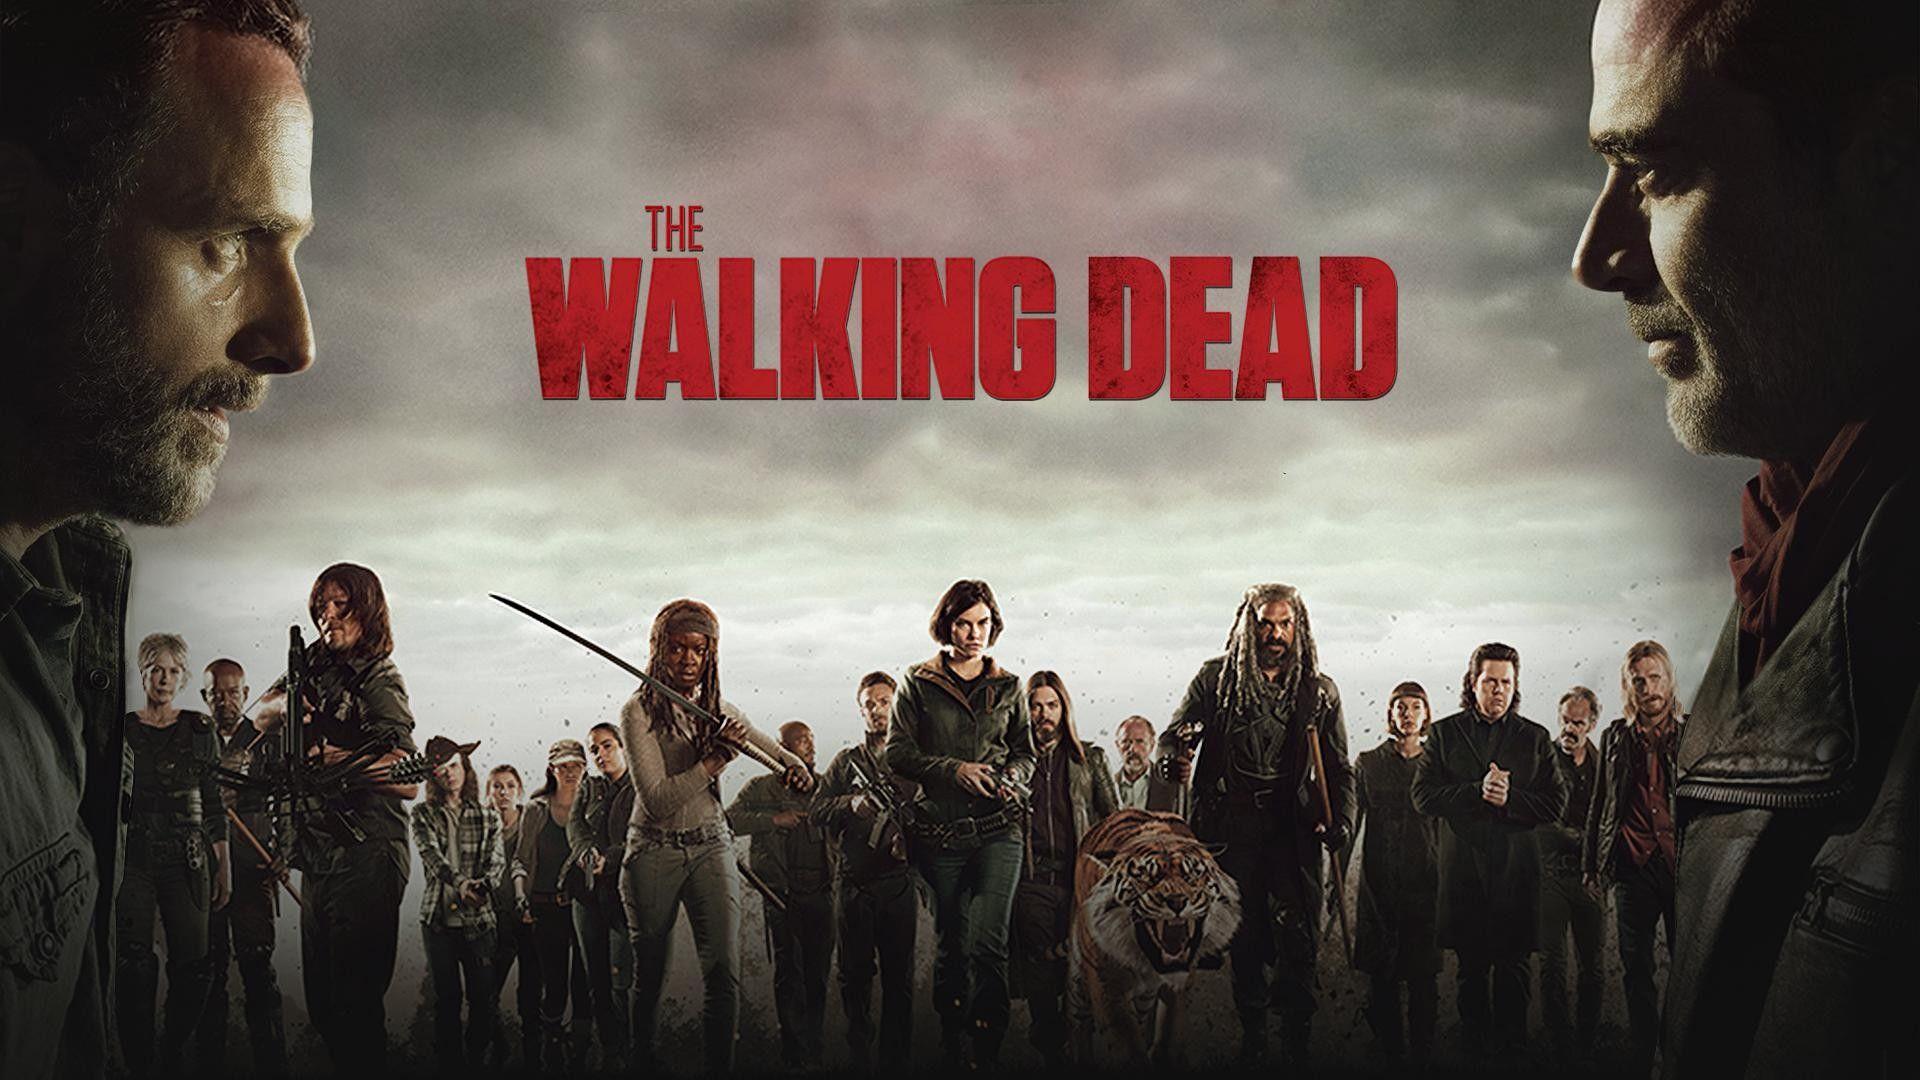 The Walking Dead 4k Wallpapers - Top Free The Walking Dead 4k